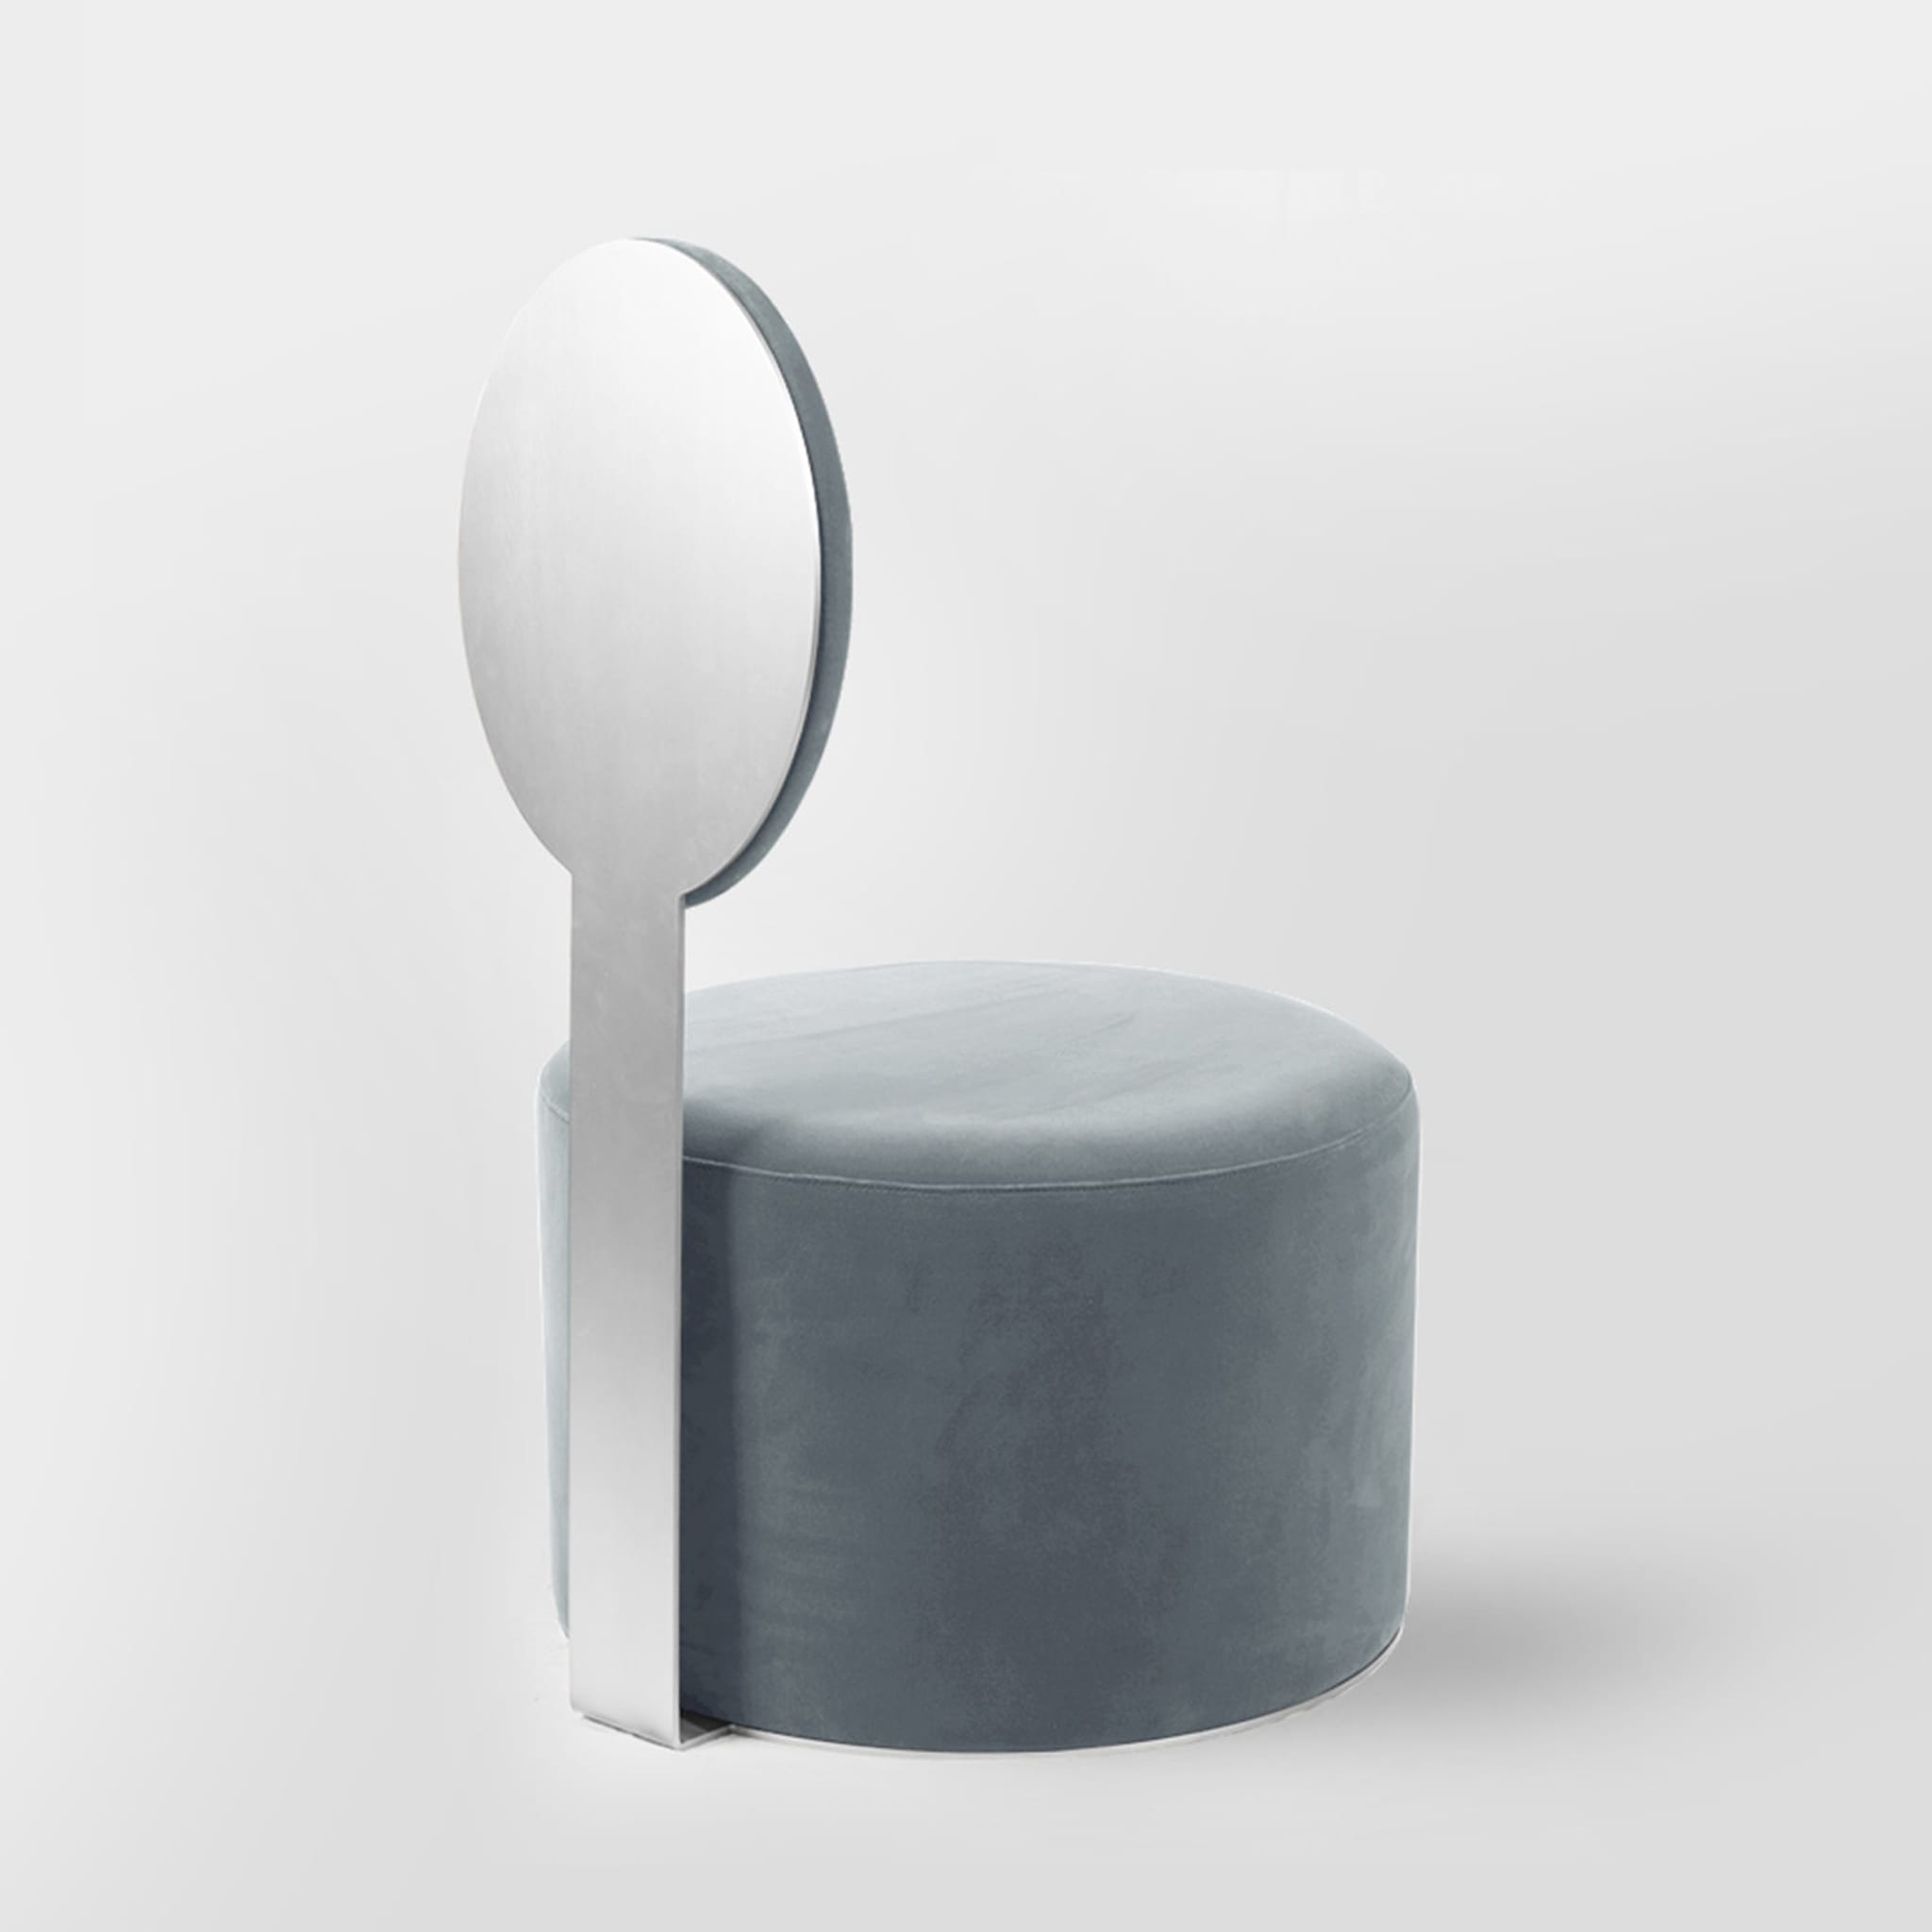 Pop Azure Chair by Artefatto Design Studio - Alternative view 2